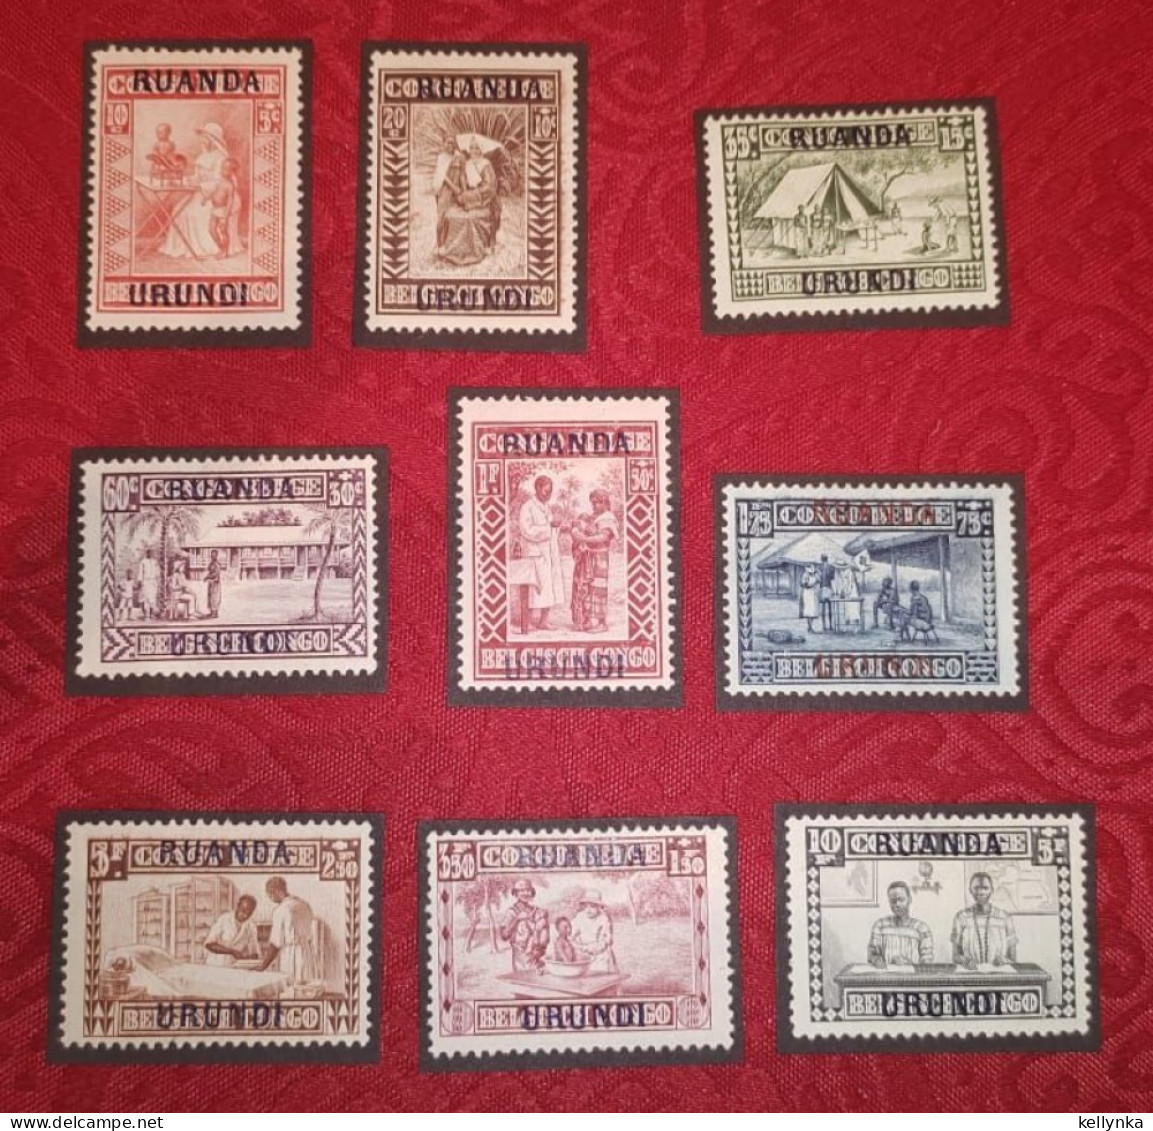 Ruanda Urundi - 81/89 - Goutte De Lait - 1930 - MH - Unused Stamps